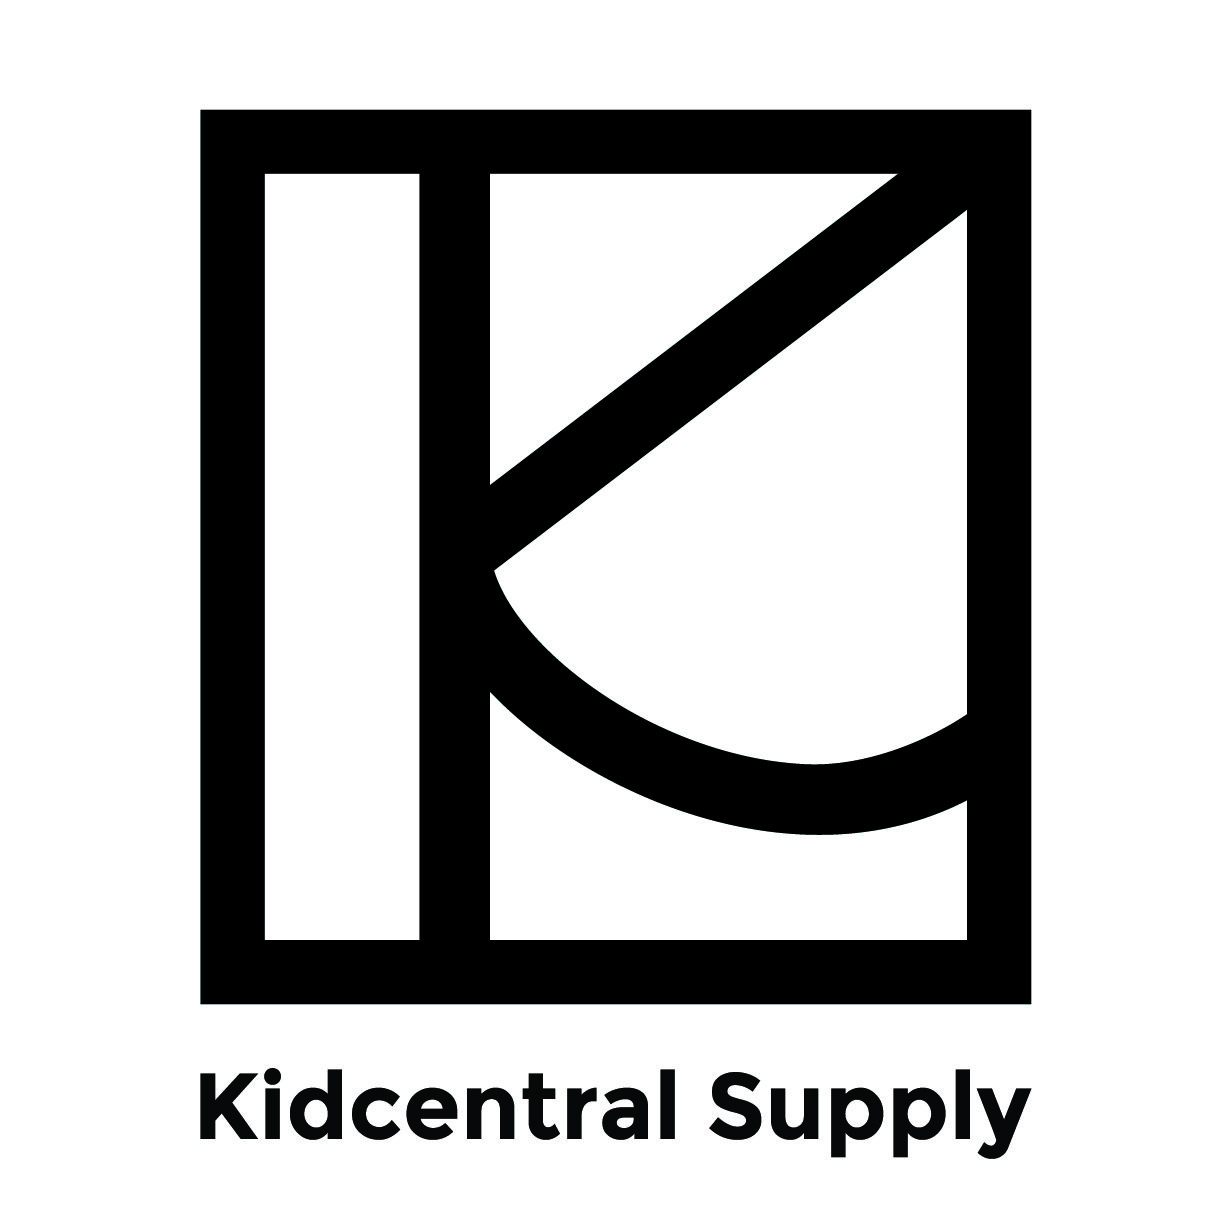 Kidcentral